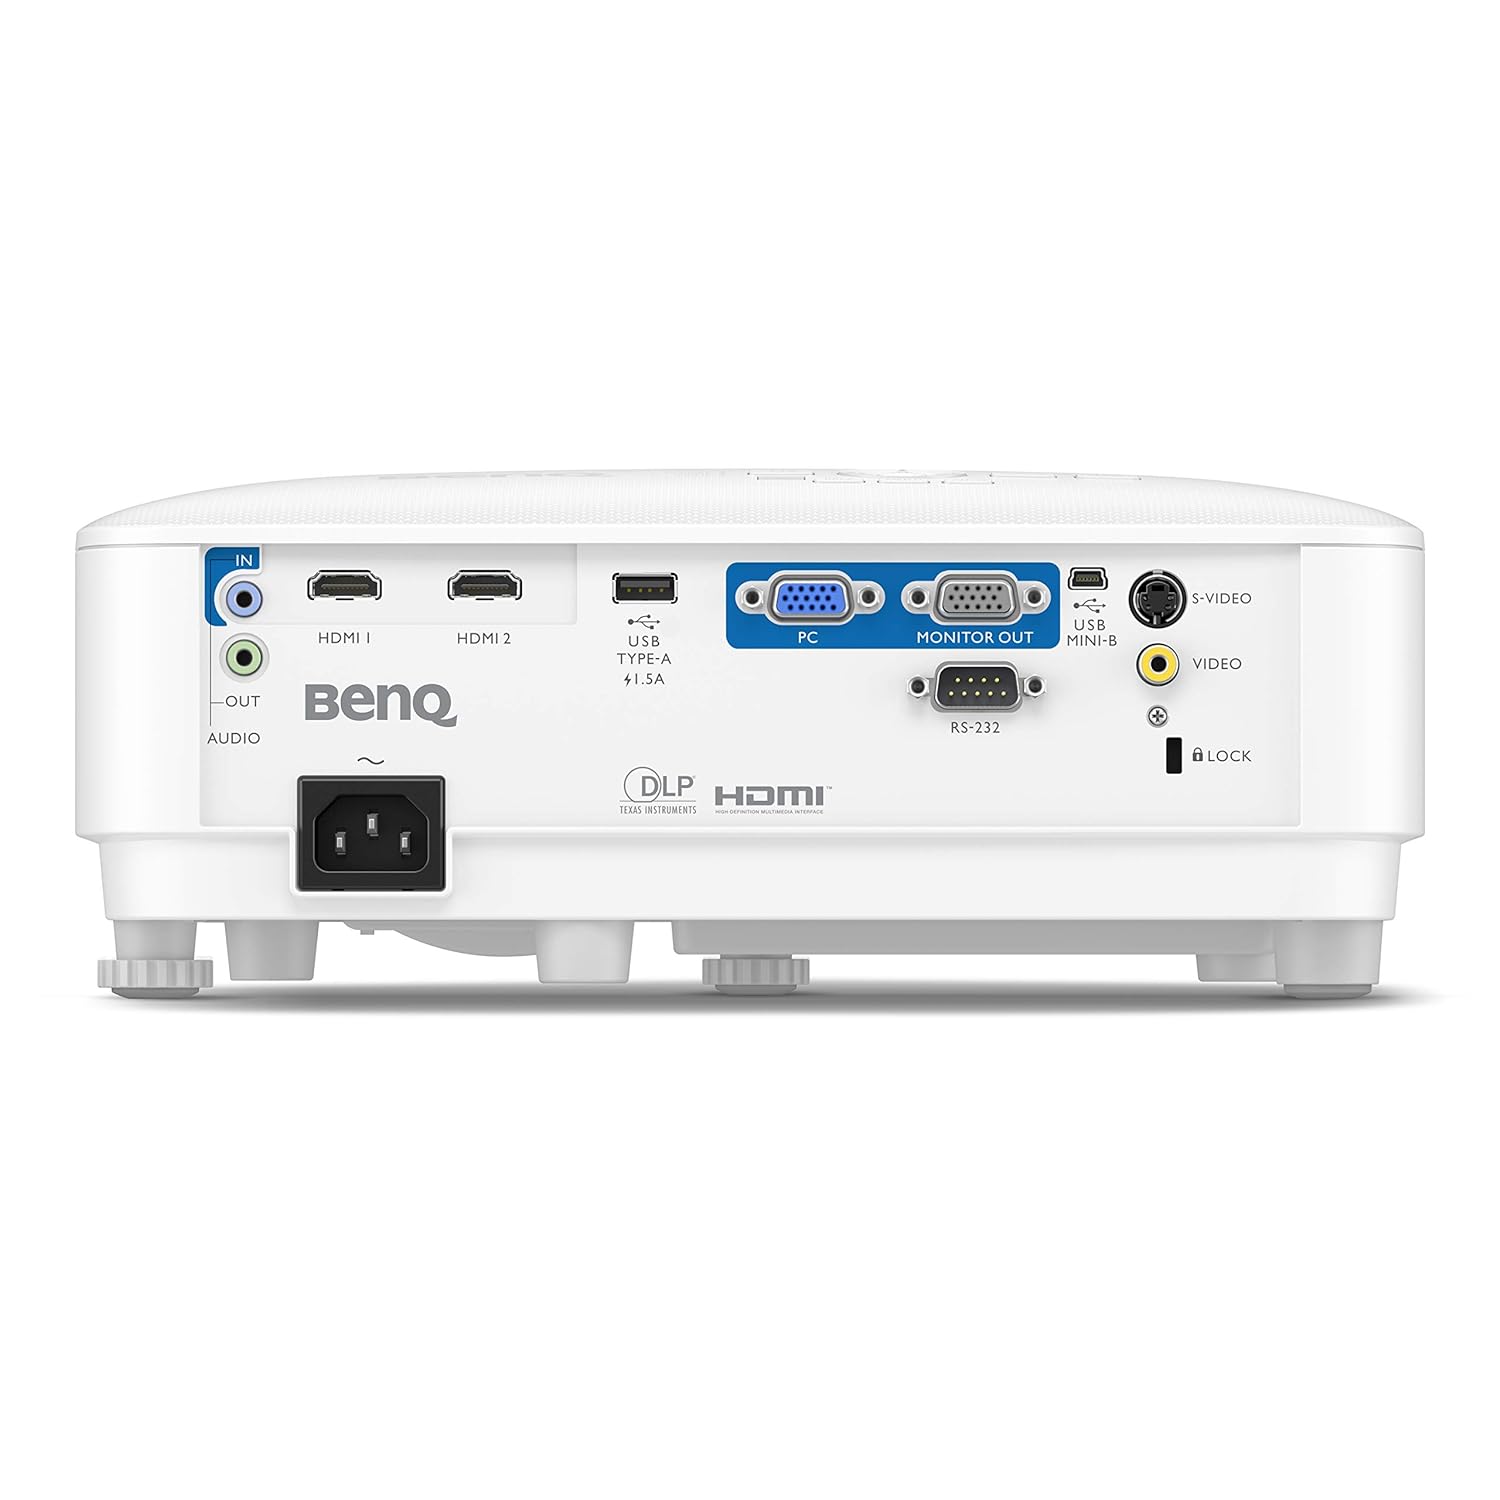 BENQ MH560 Projector | 3800 Lumens, DLP, Full HD, 1920 x 1080 